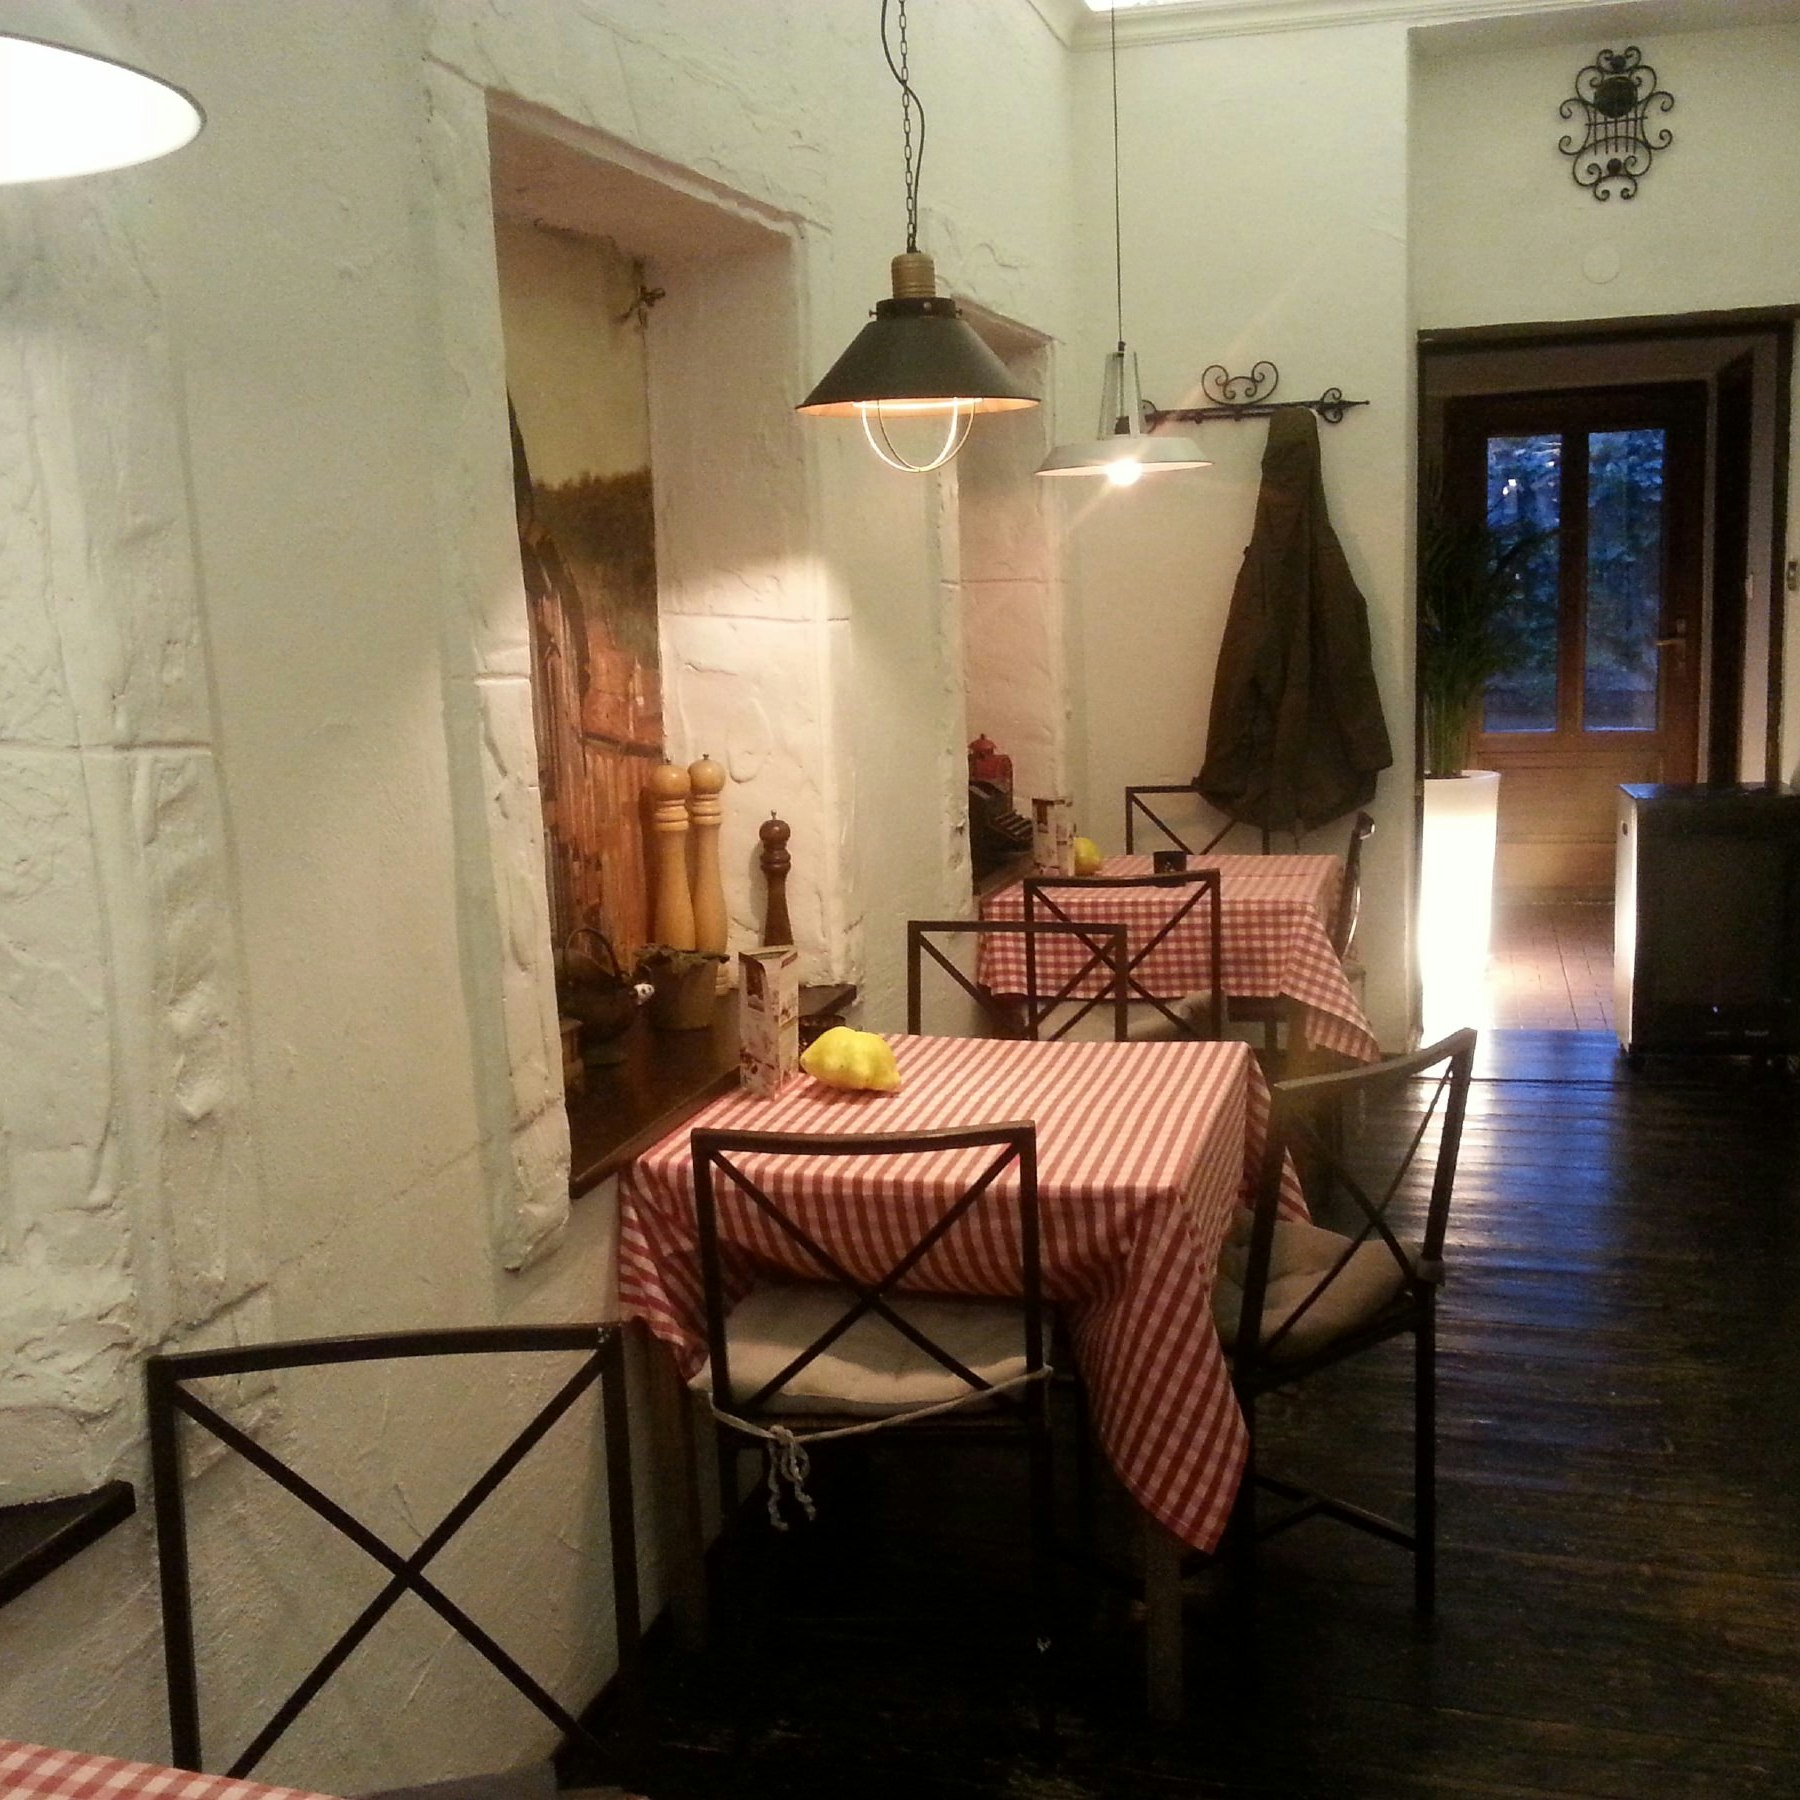 Kuchnia i Wino, side dining area.